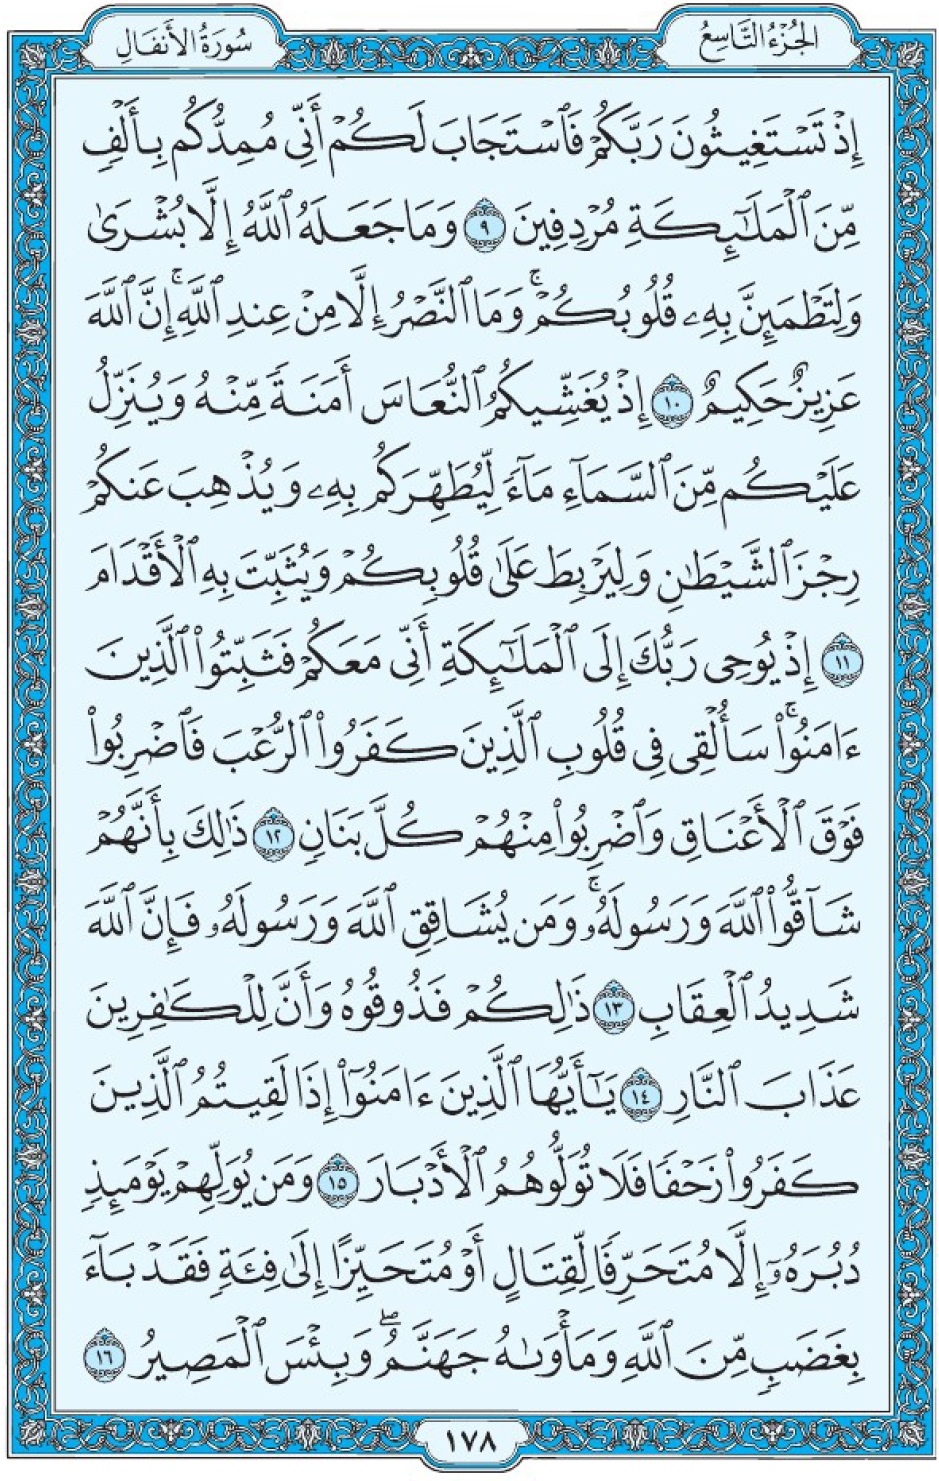 Коран Мединский мусхаф страница 178, Аль-Анфаль, аят 9-16